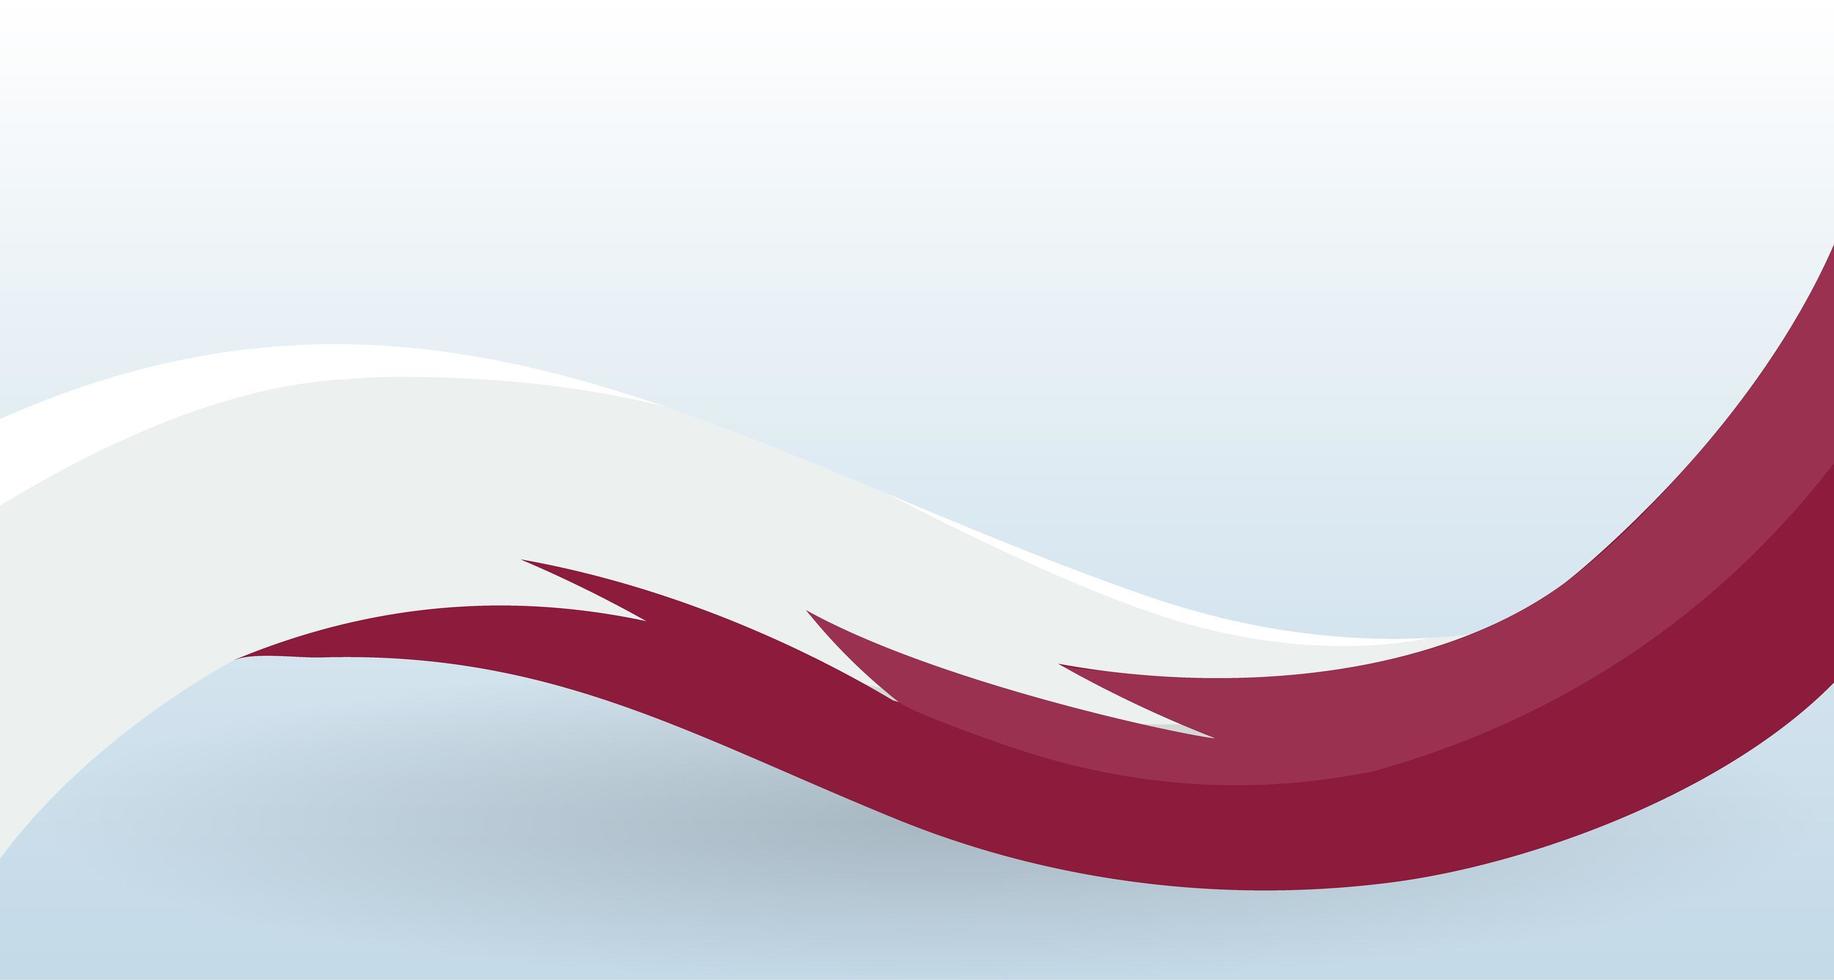 qatar ondeando la bandera nacional. forma inusual moderna. plantilla de diseño para la decoración de folletos y tarjetas, carteles, pancartas y logotipos. ilustración vectorial aislada. vector